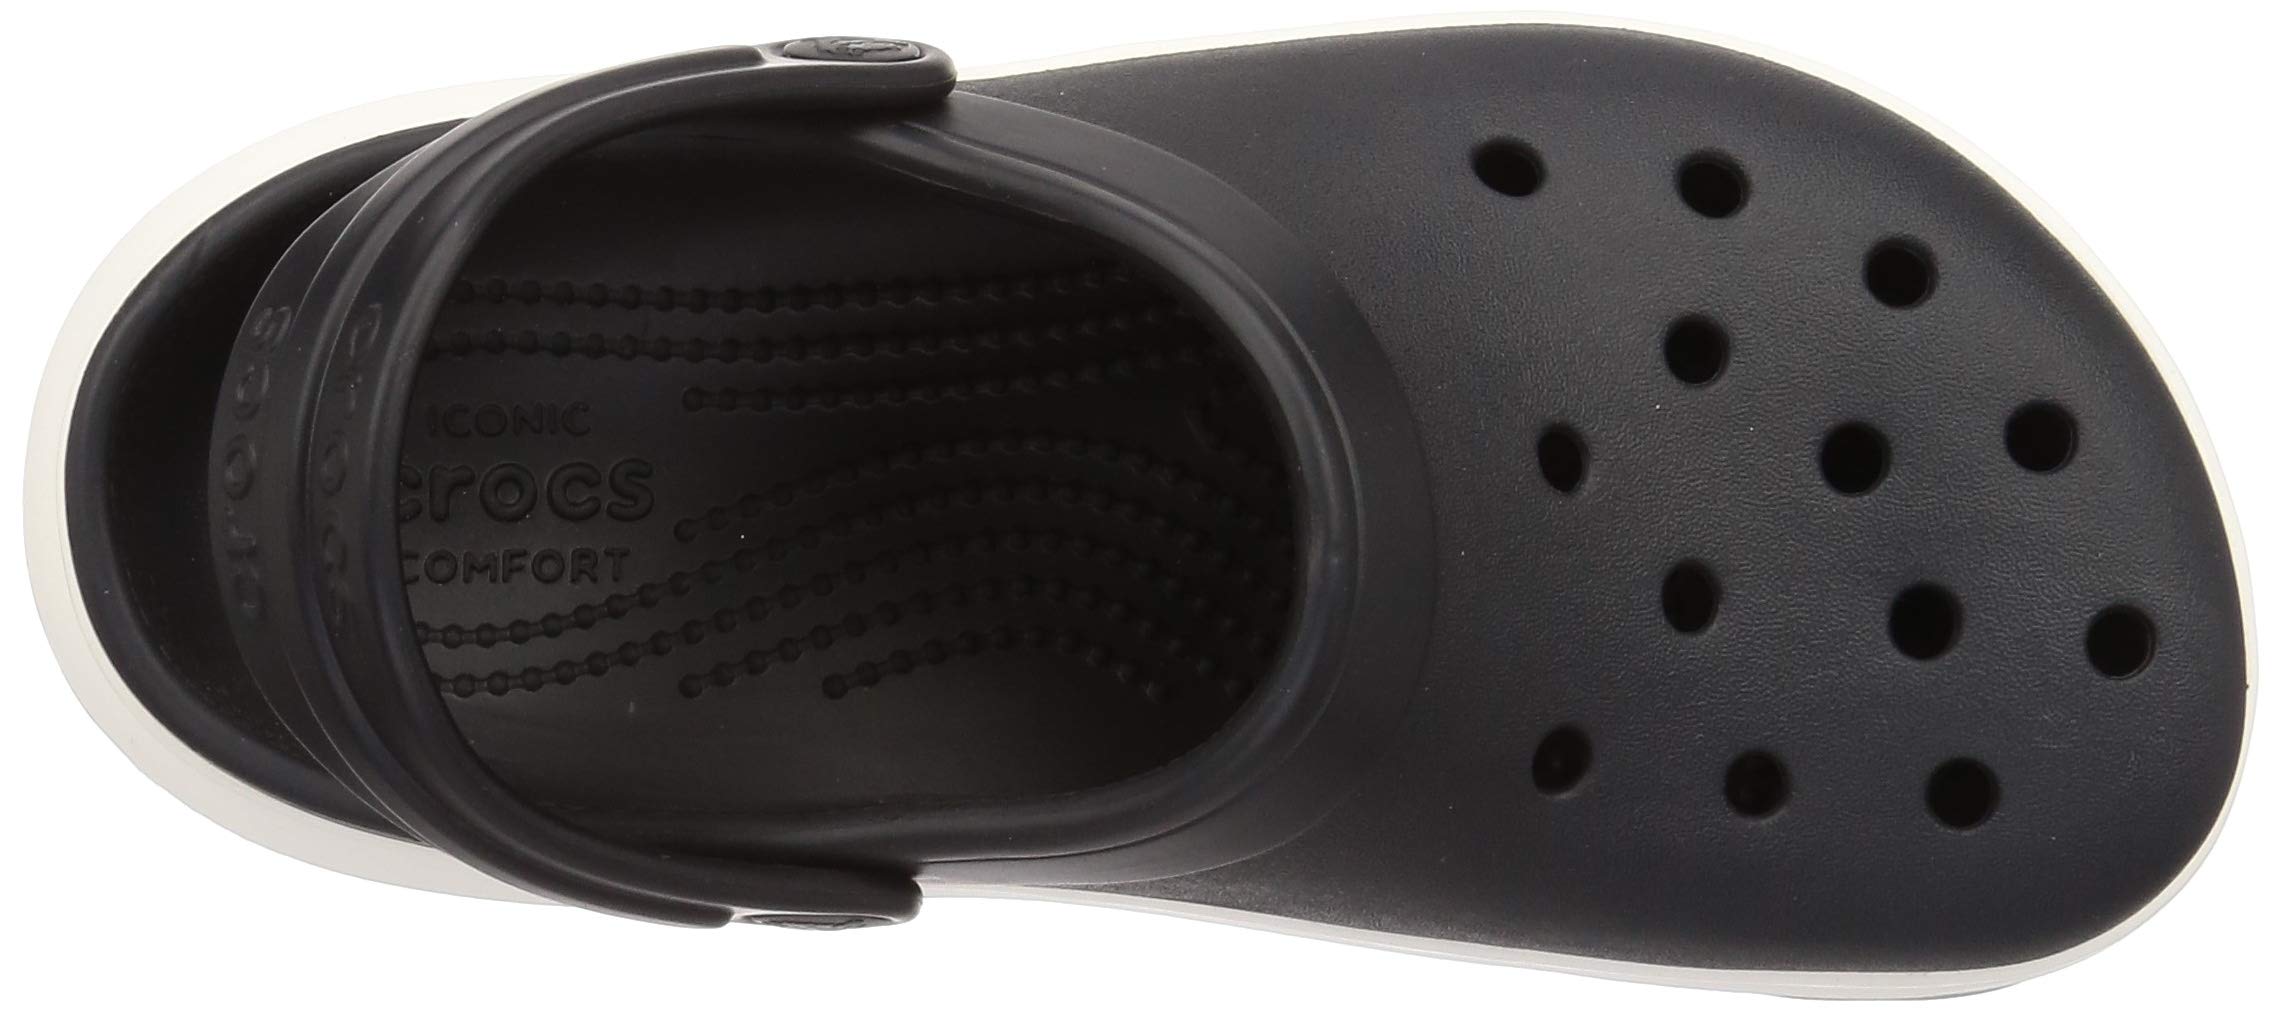 Mua Crocs Crocband Full Force Clog Sandals trên Amazon Nhật chính hãng 2023  | Giaonhan247